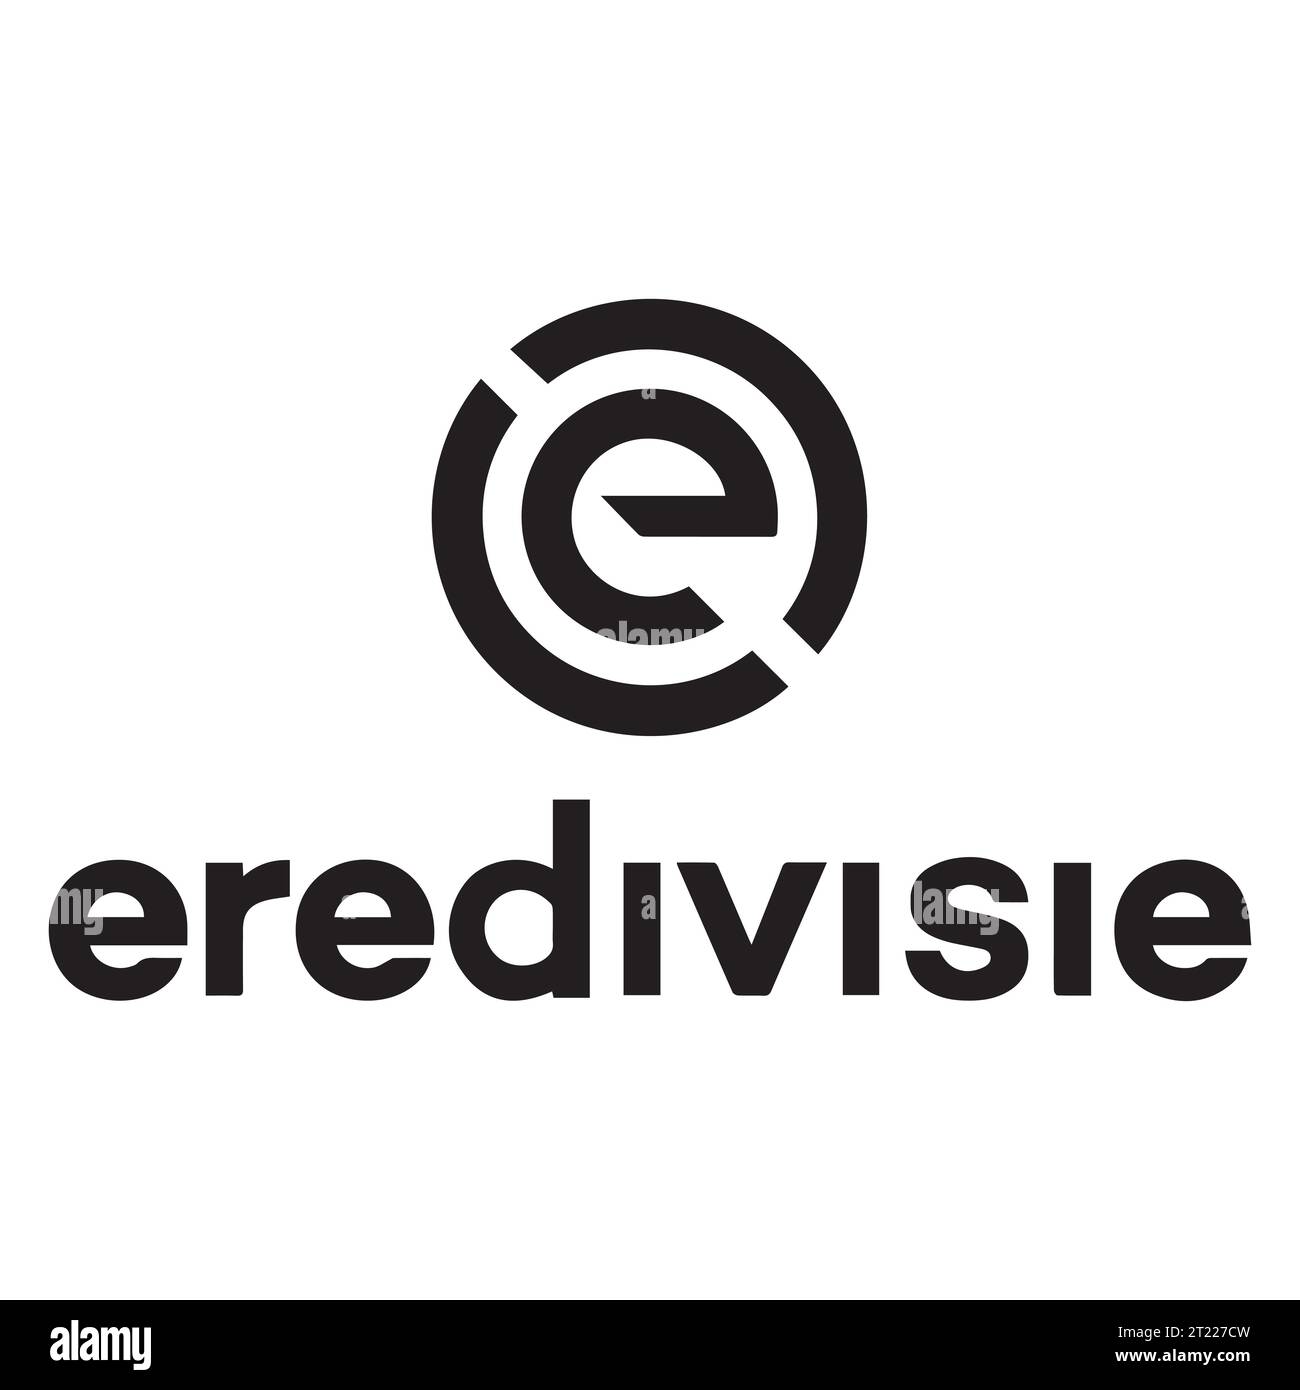 Eredivisie Schwarz-weiß-Logo niederländisches Profi-Fußball-Liga-System, Vektor-Illustration abstraktes Schwarz-weiß-bearbeitbares Bild Stock Vektor